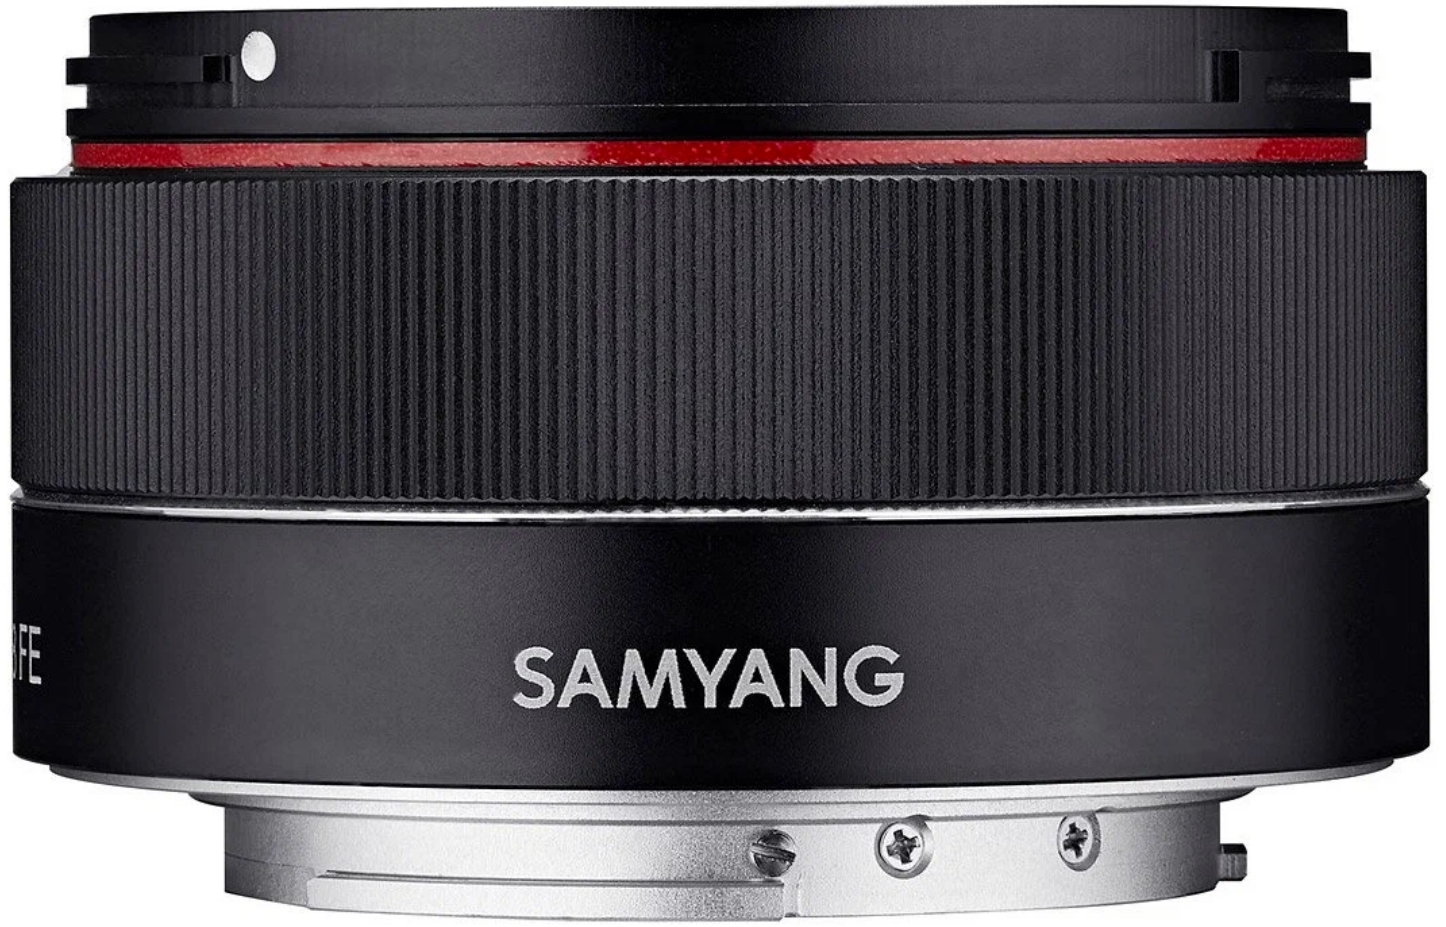 Объектив Samyang AF 35mm f/2.8 for Sony FE, автофокусный